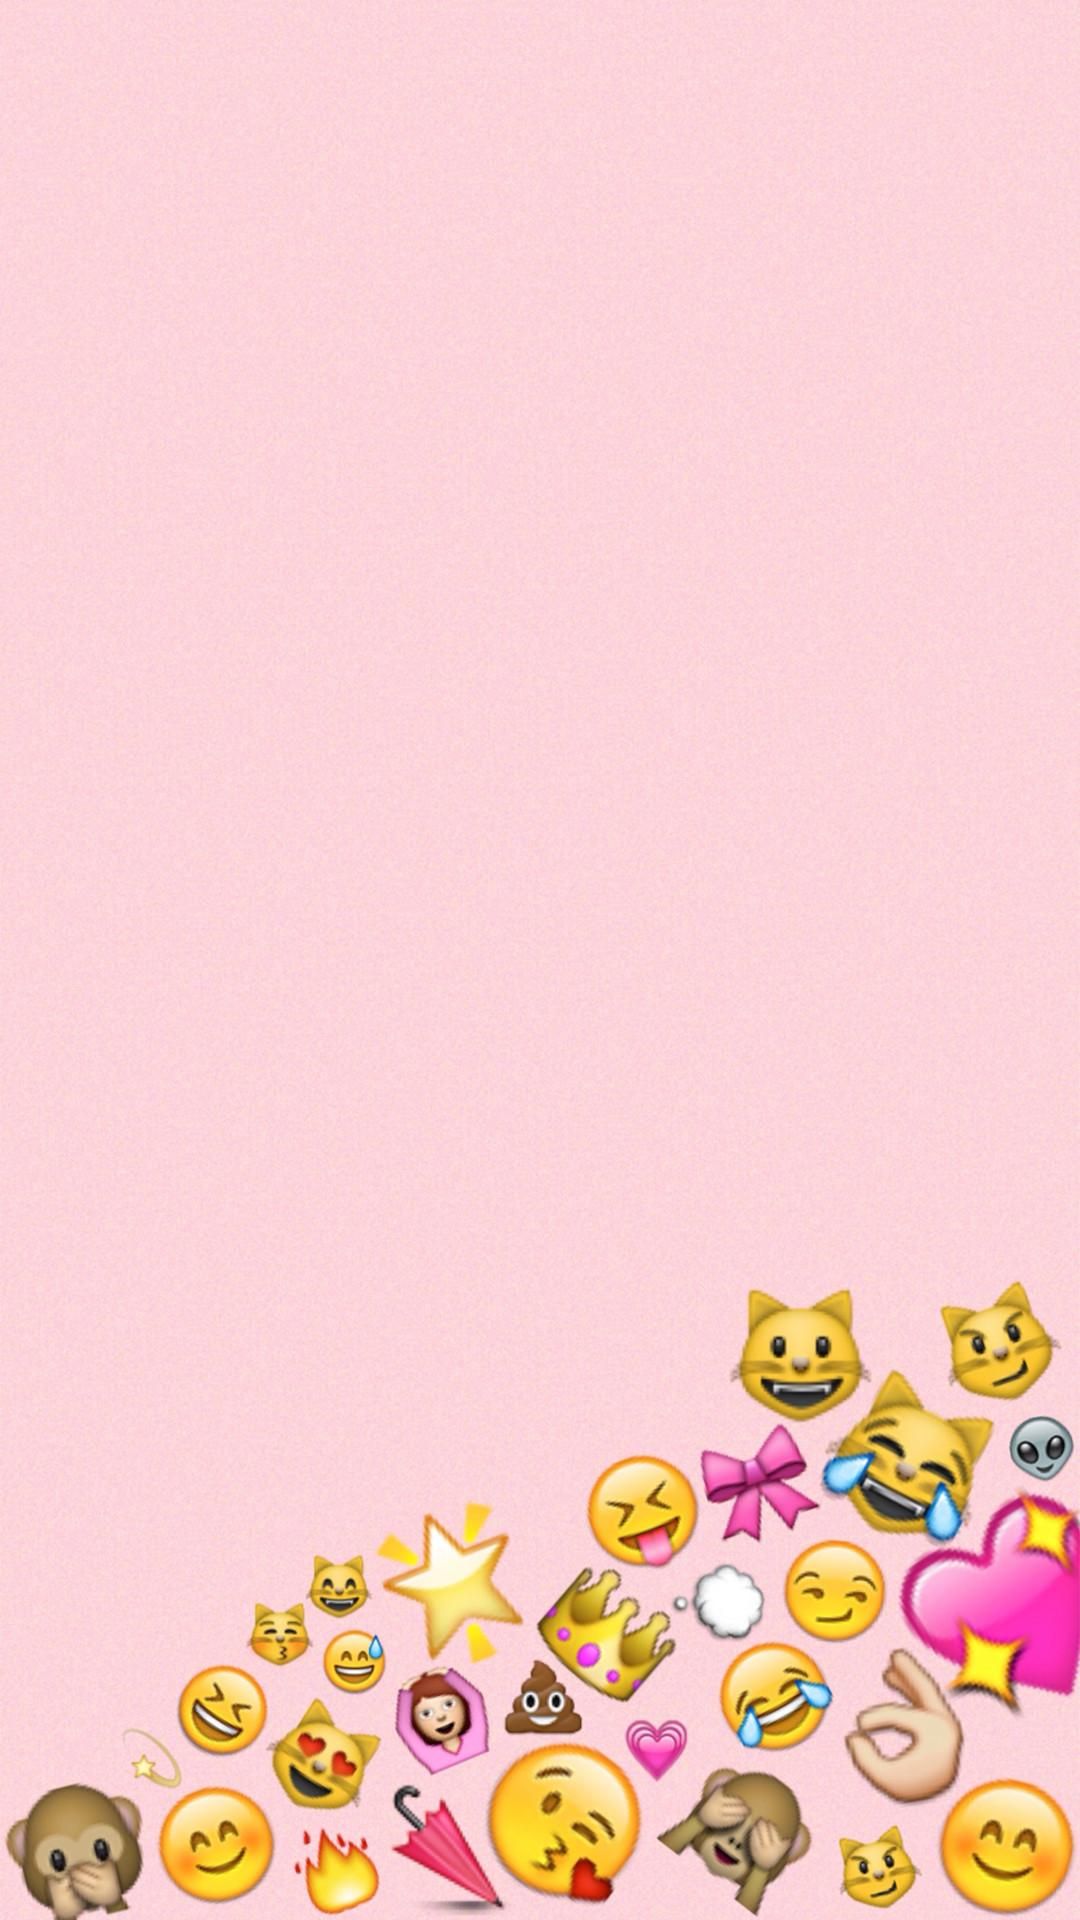 Cute emoji wallpaper for your phone or desktop! - Emoji